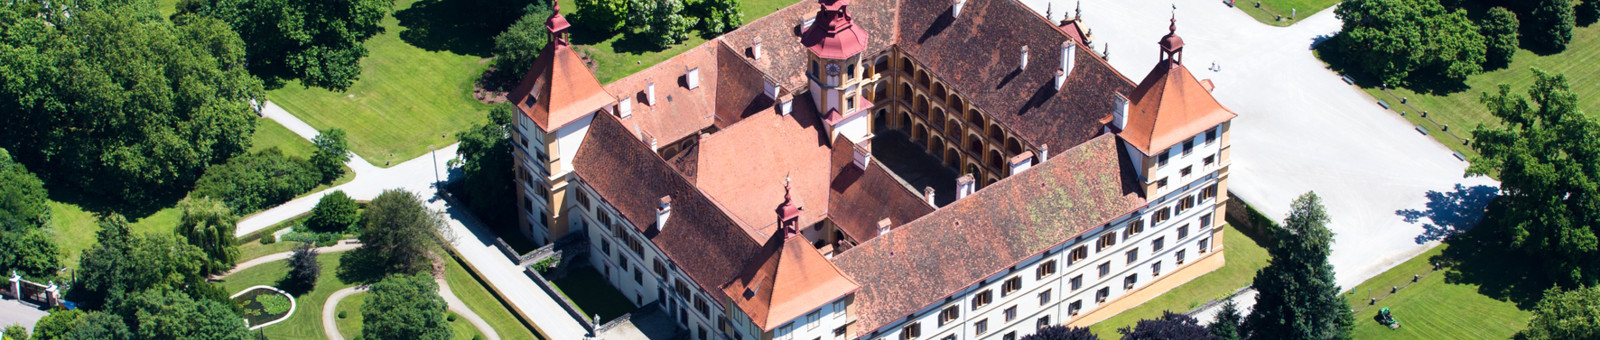     Eggenberg Palace 